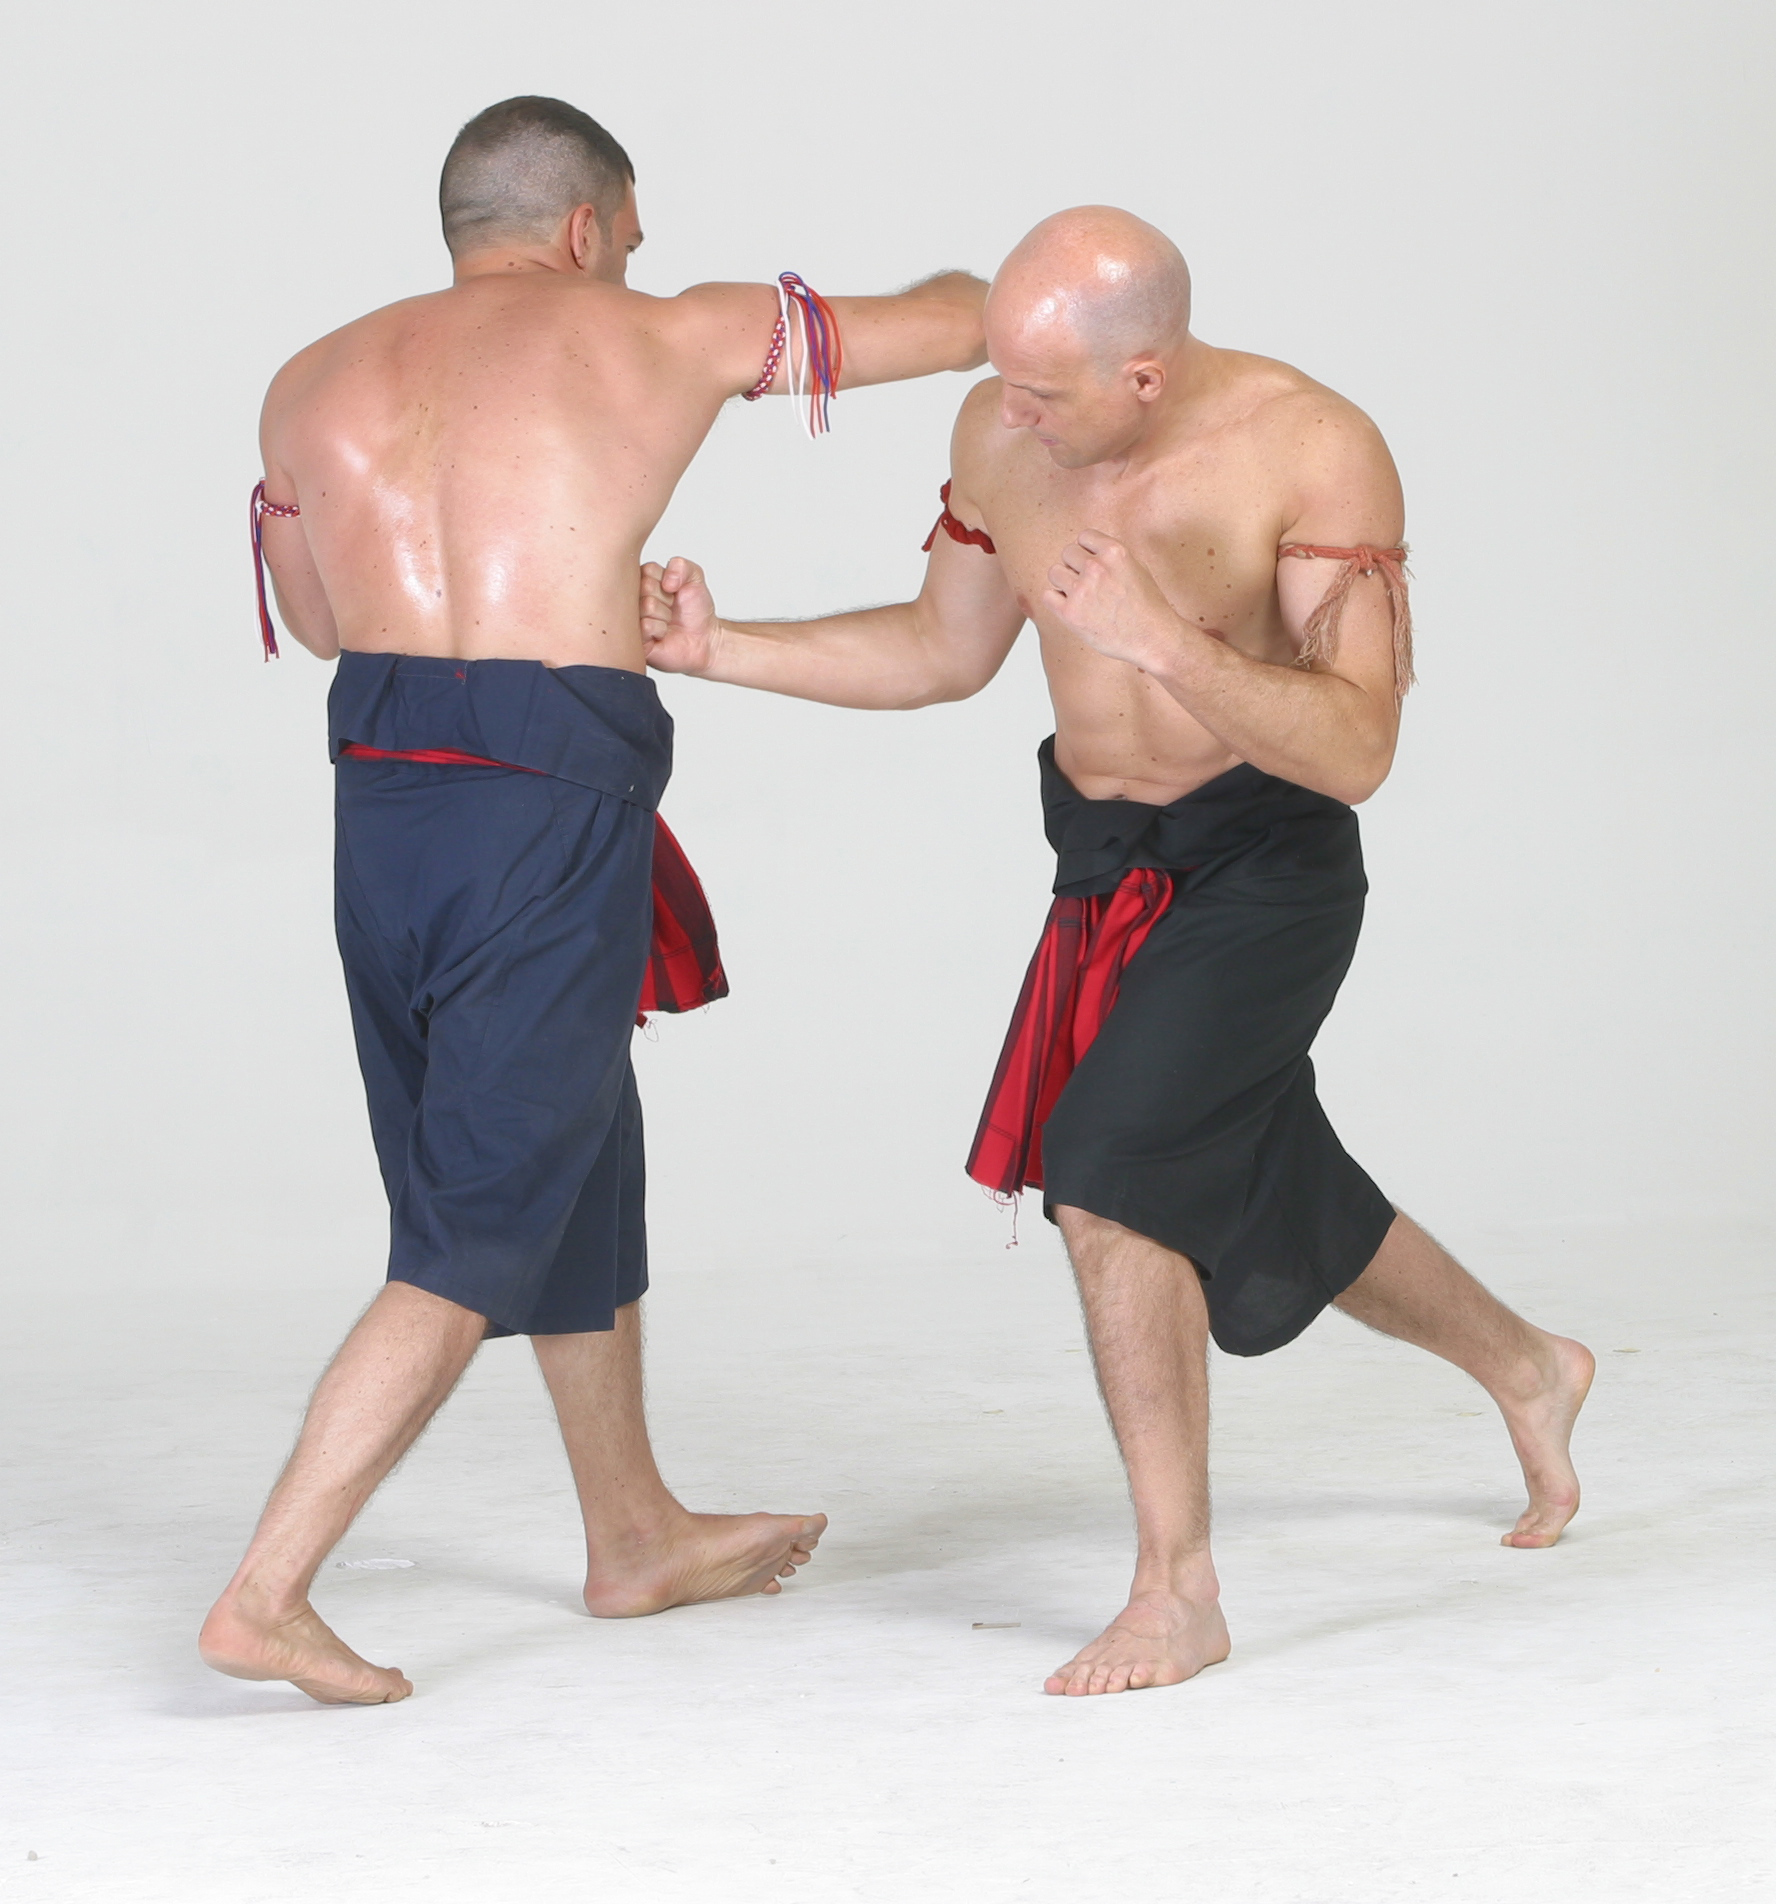 3. Muay Thai: golpear el cuerpo o la cabeza?